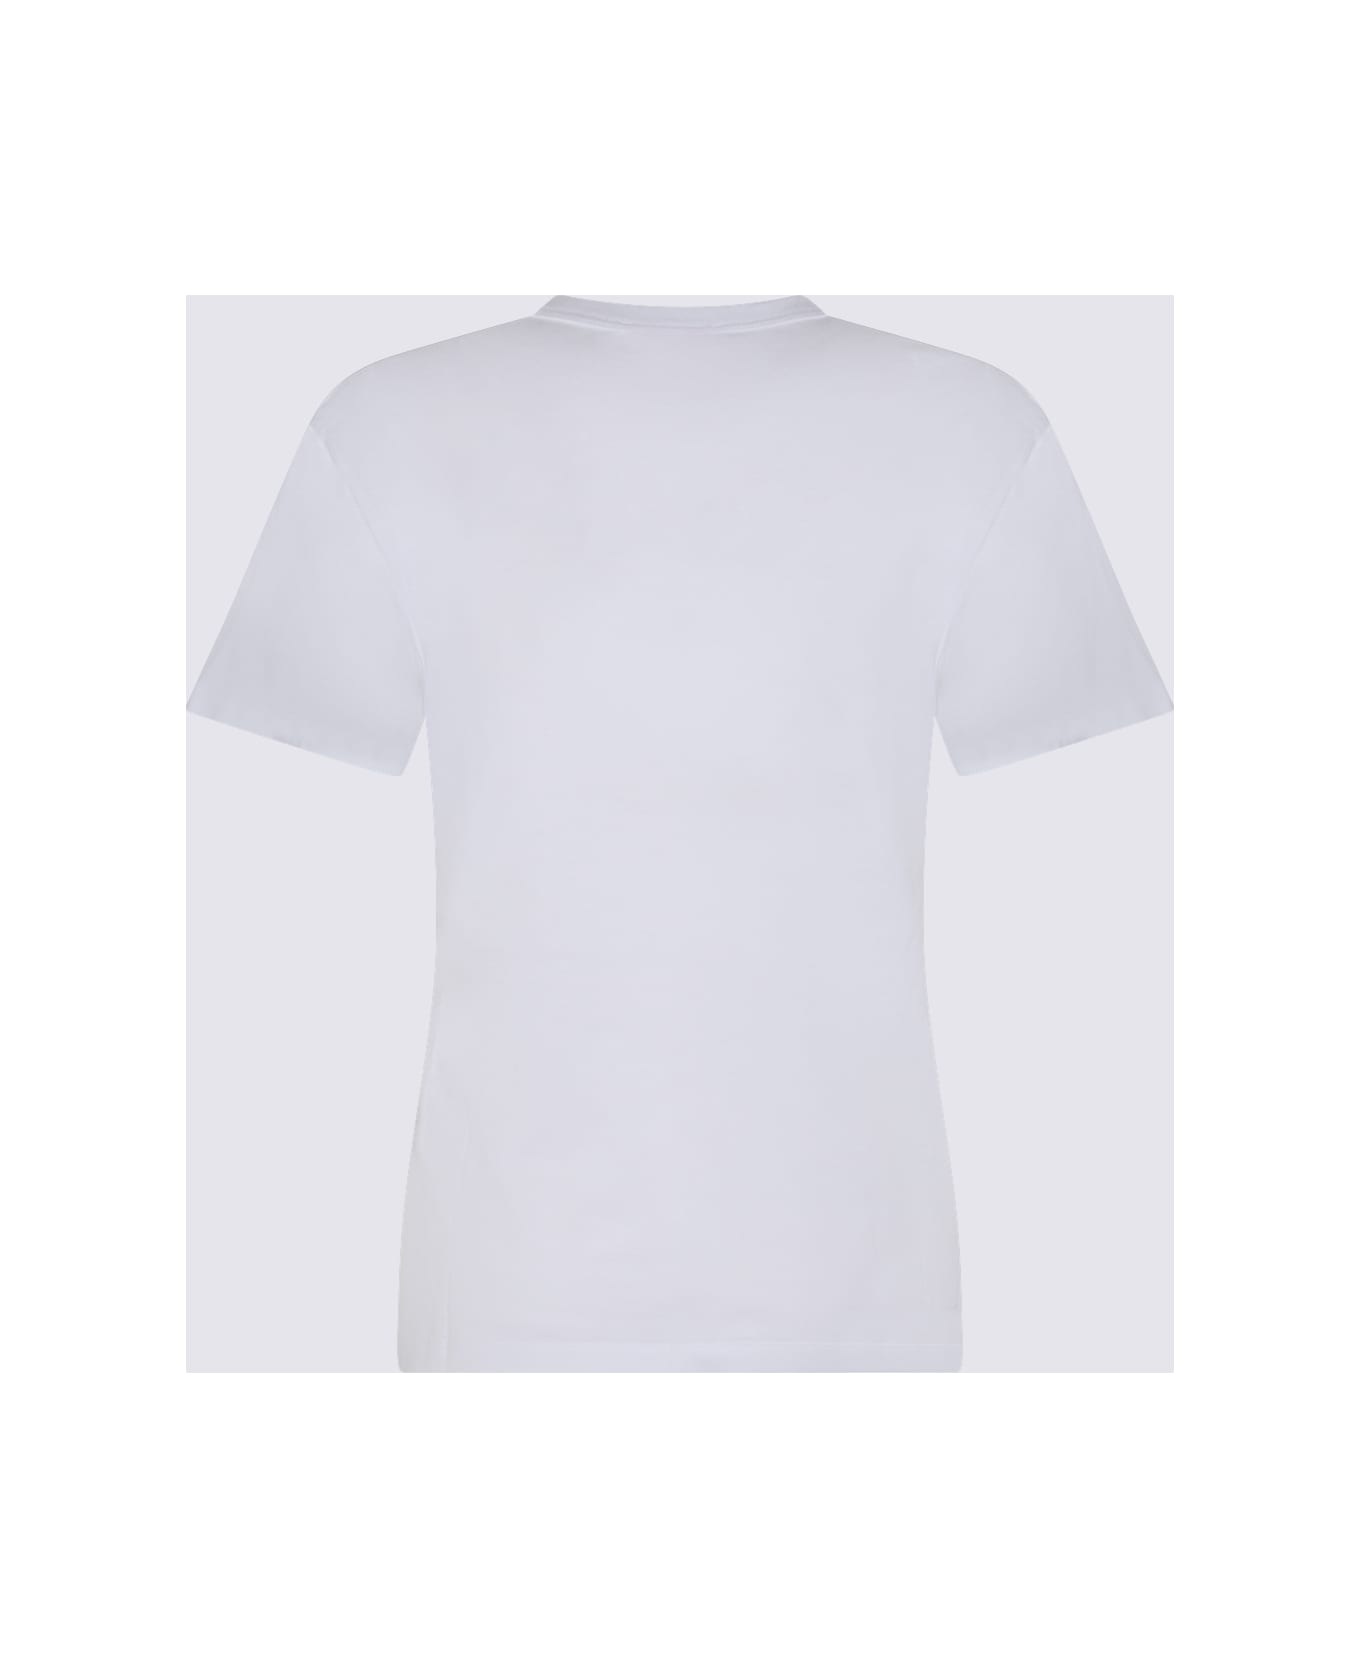 Pucci White Cotton T-shirt - White Tシャツ